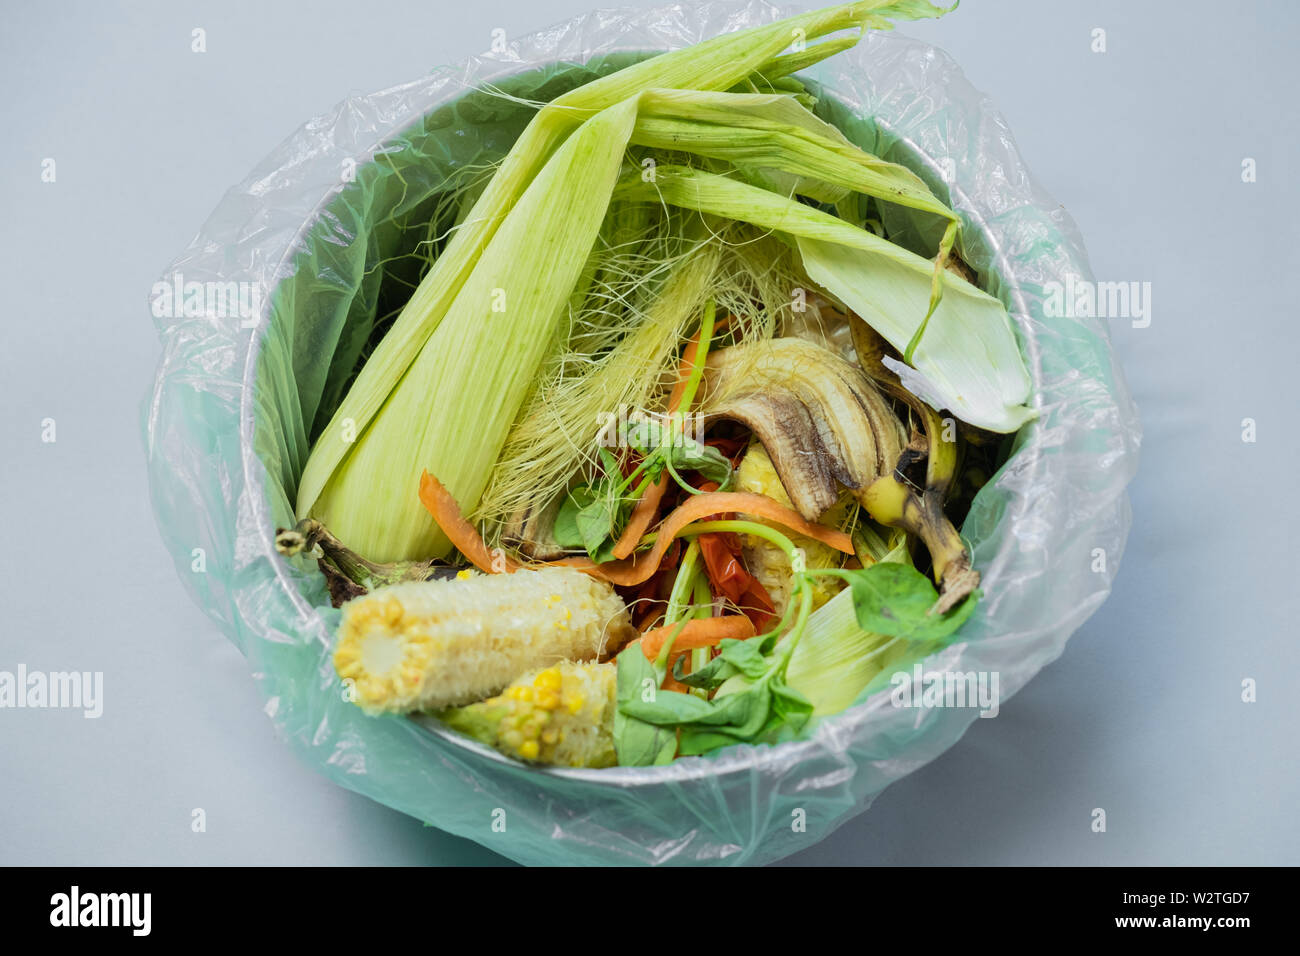 Les déchets alimentaires organiques dans un seau, tourné à partir de ci-dessus. Zéro déchets, recyclage, tri des déchets - concept et les restes de peaux de fruits et légumes Banque D'Images